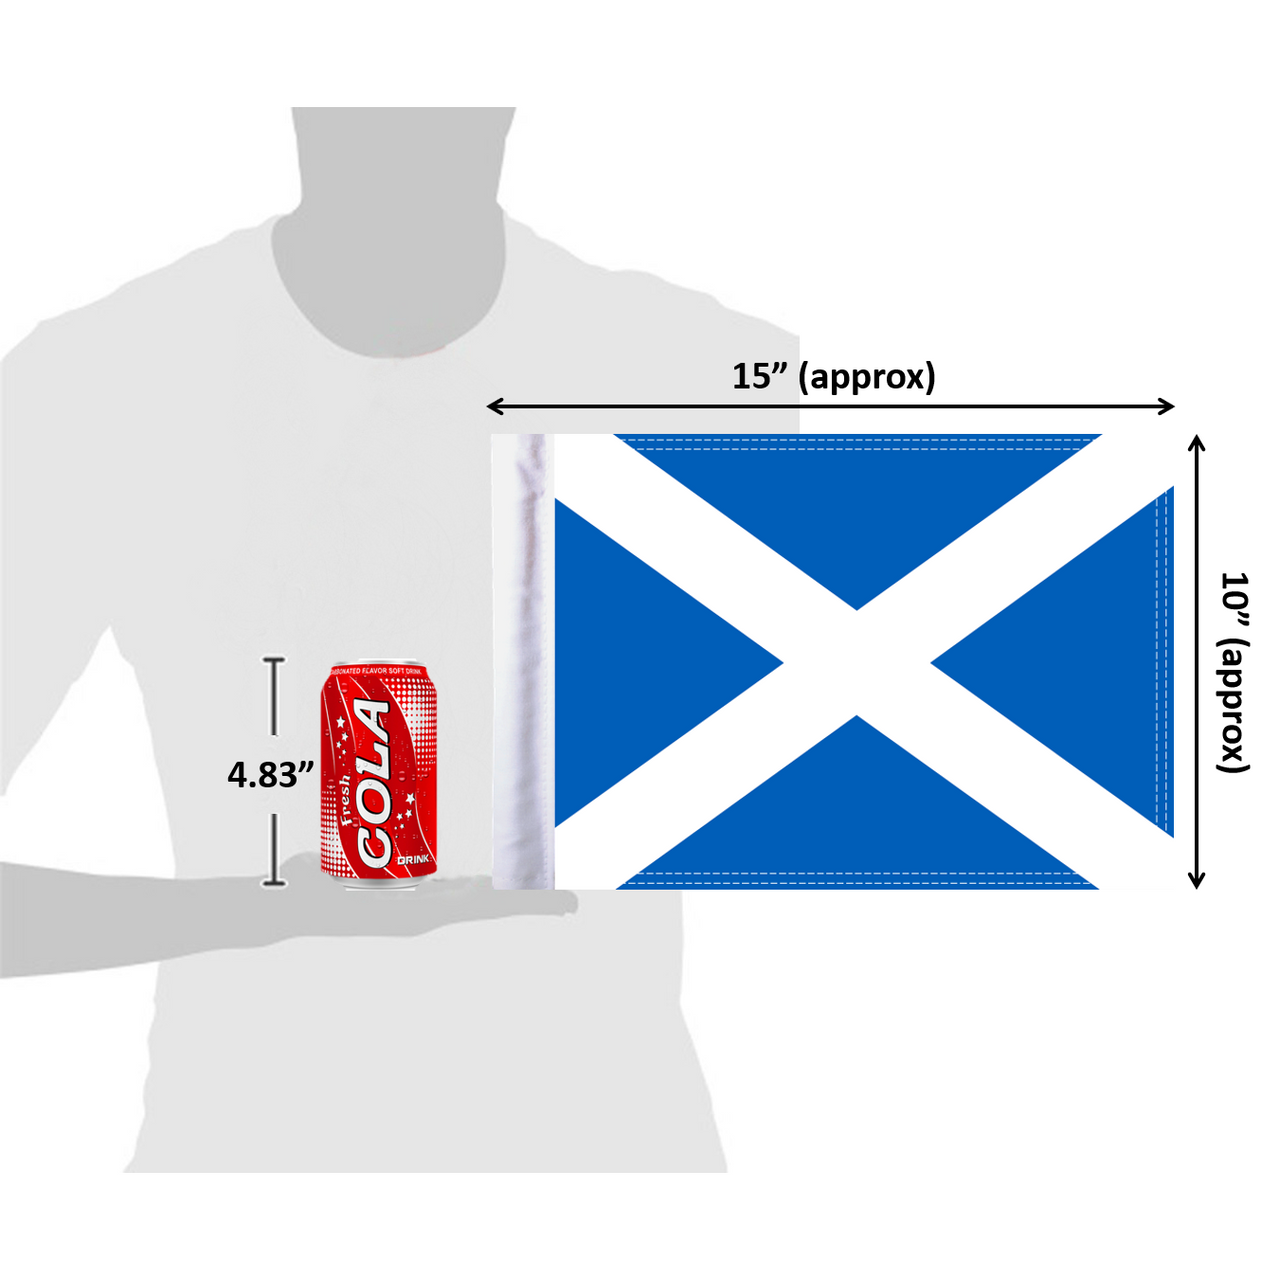 10"x15" Scotland flag (size comparison view)